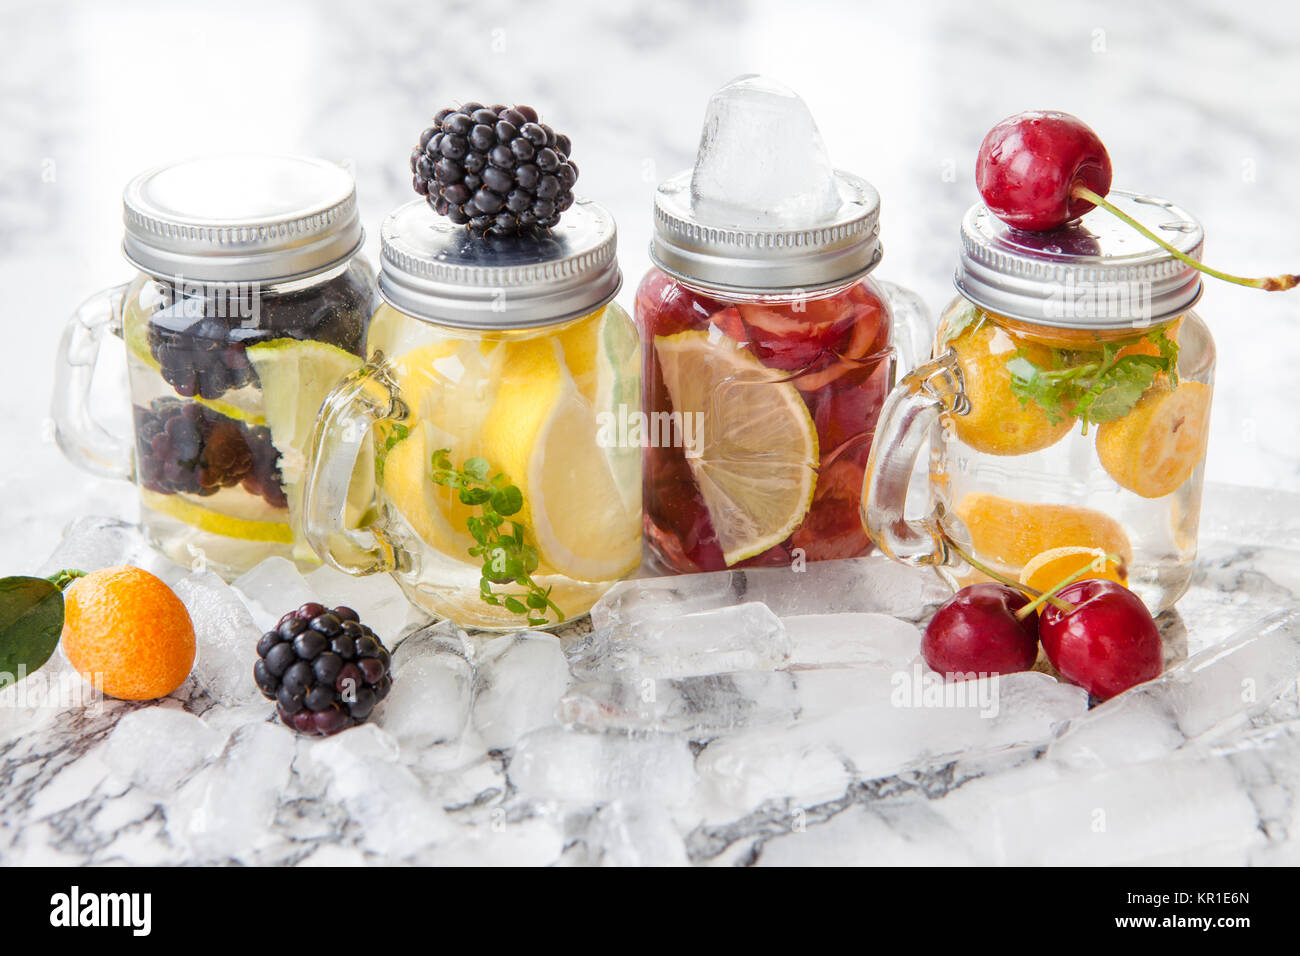 Frisches Wasser mit bunten Fruechten in kleinen Einmachglaesern Foto Stock